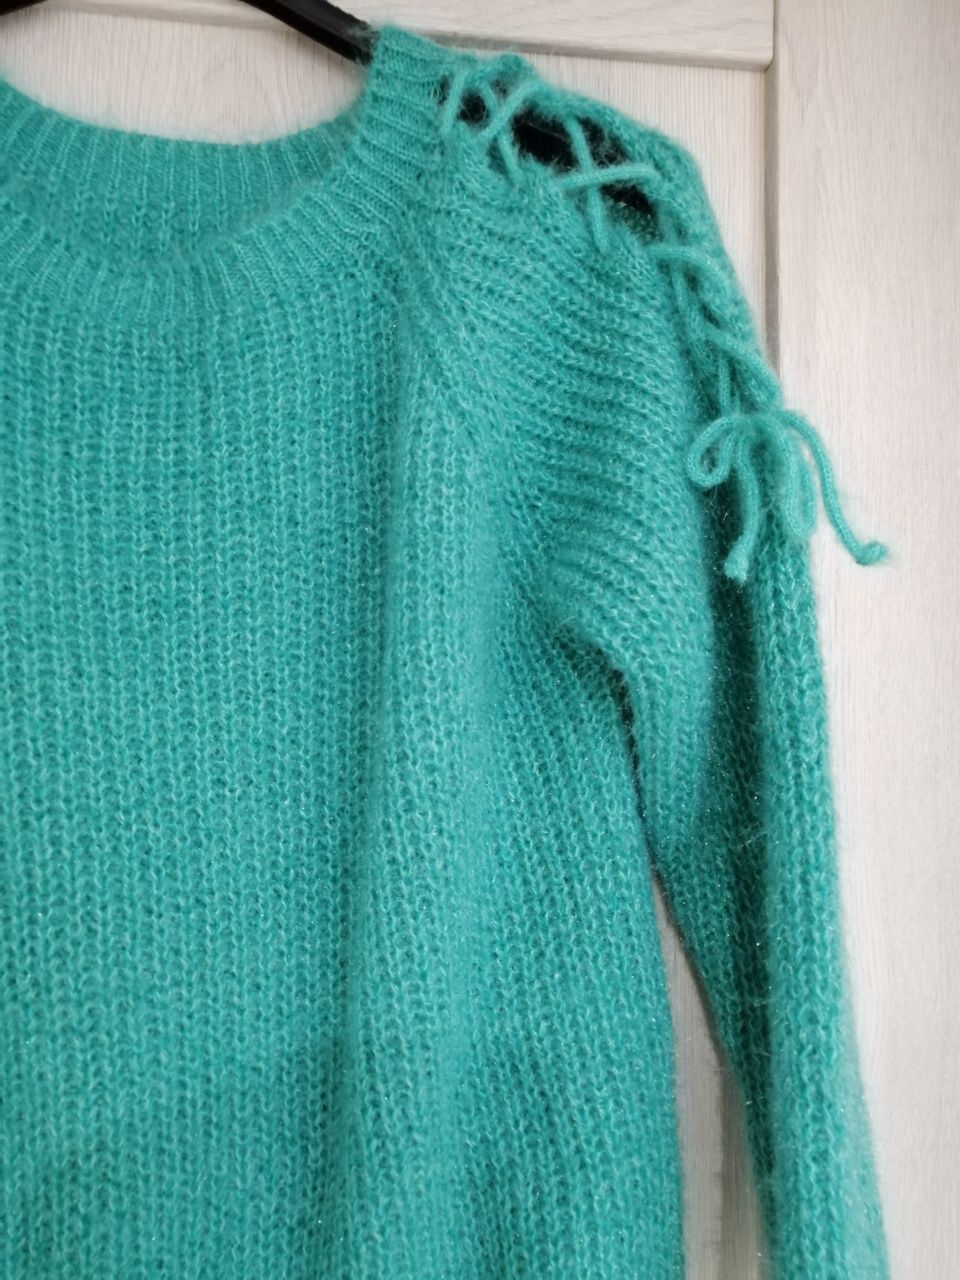 Zielony sweter miętowy turkus moher xs s m L wiązania kokardki